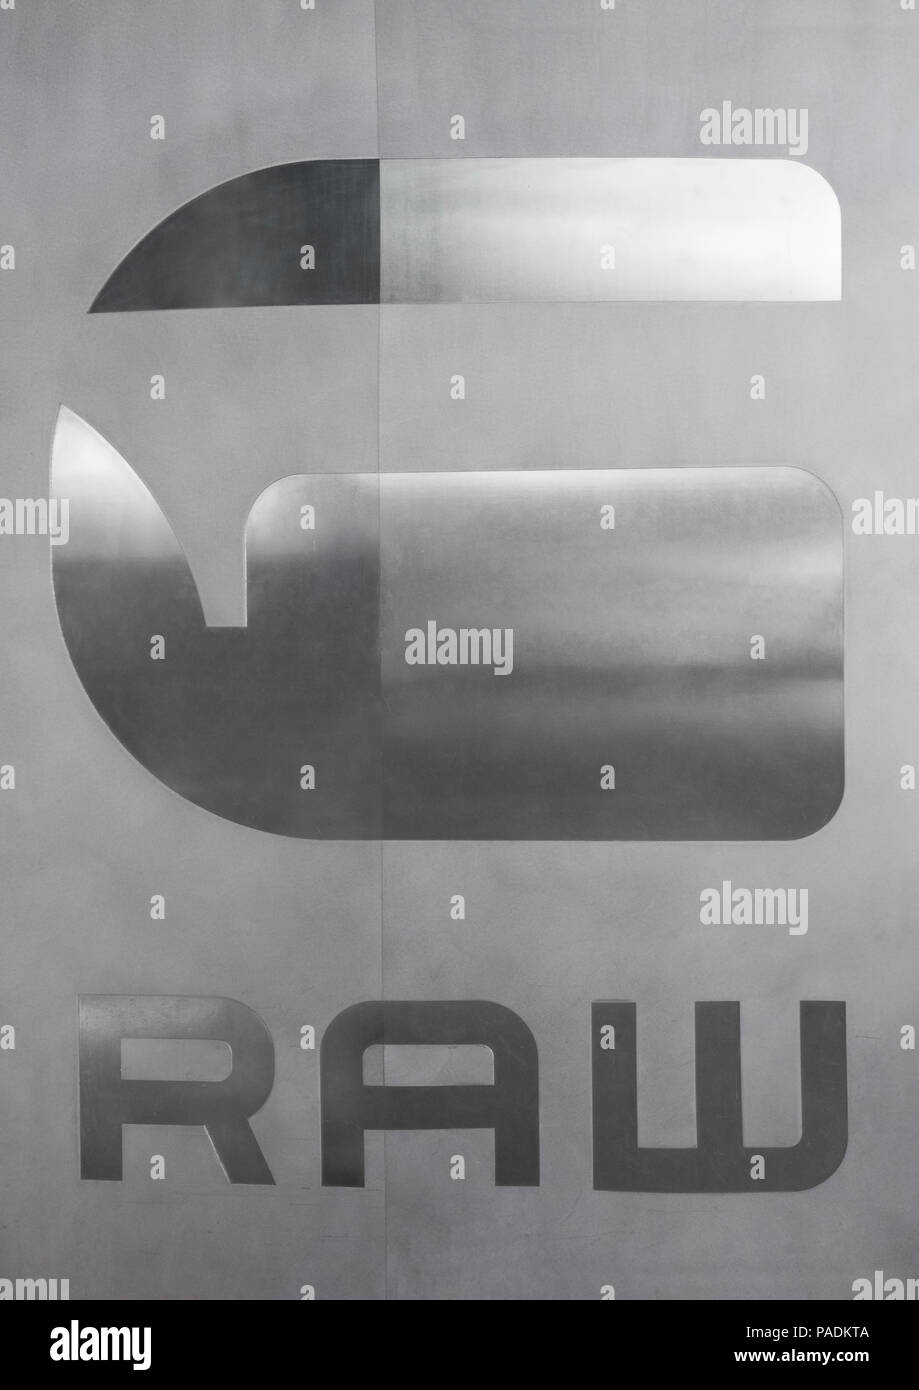 AMSTERDAM, NIEDERLANDE, 18. Juli 2018: Die G-Star Raw shop Logo auf  Stahlblech mit Reflektion Stockfotografie - Alamy